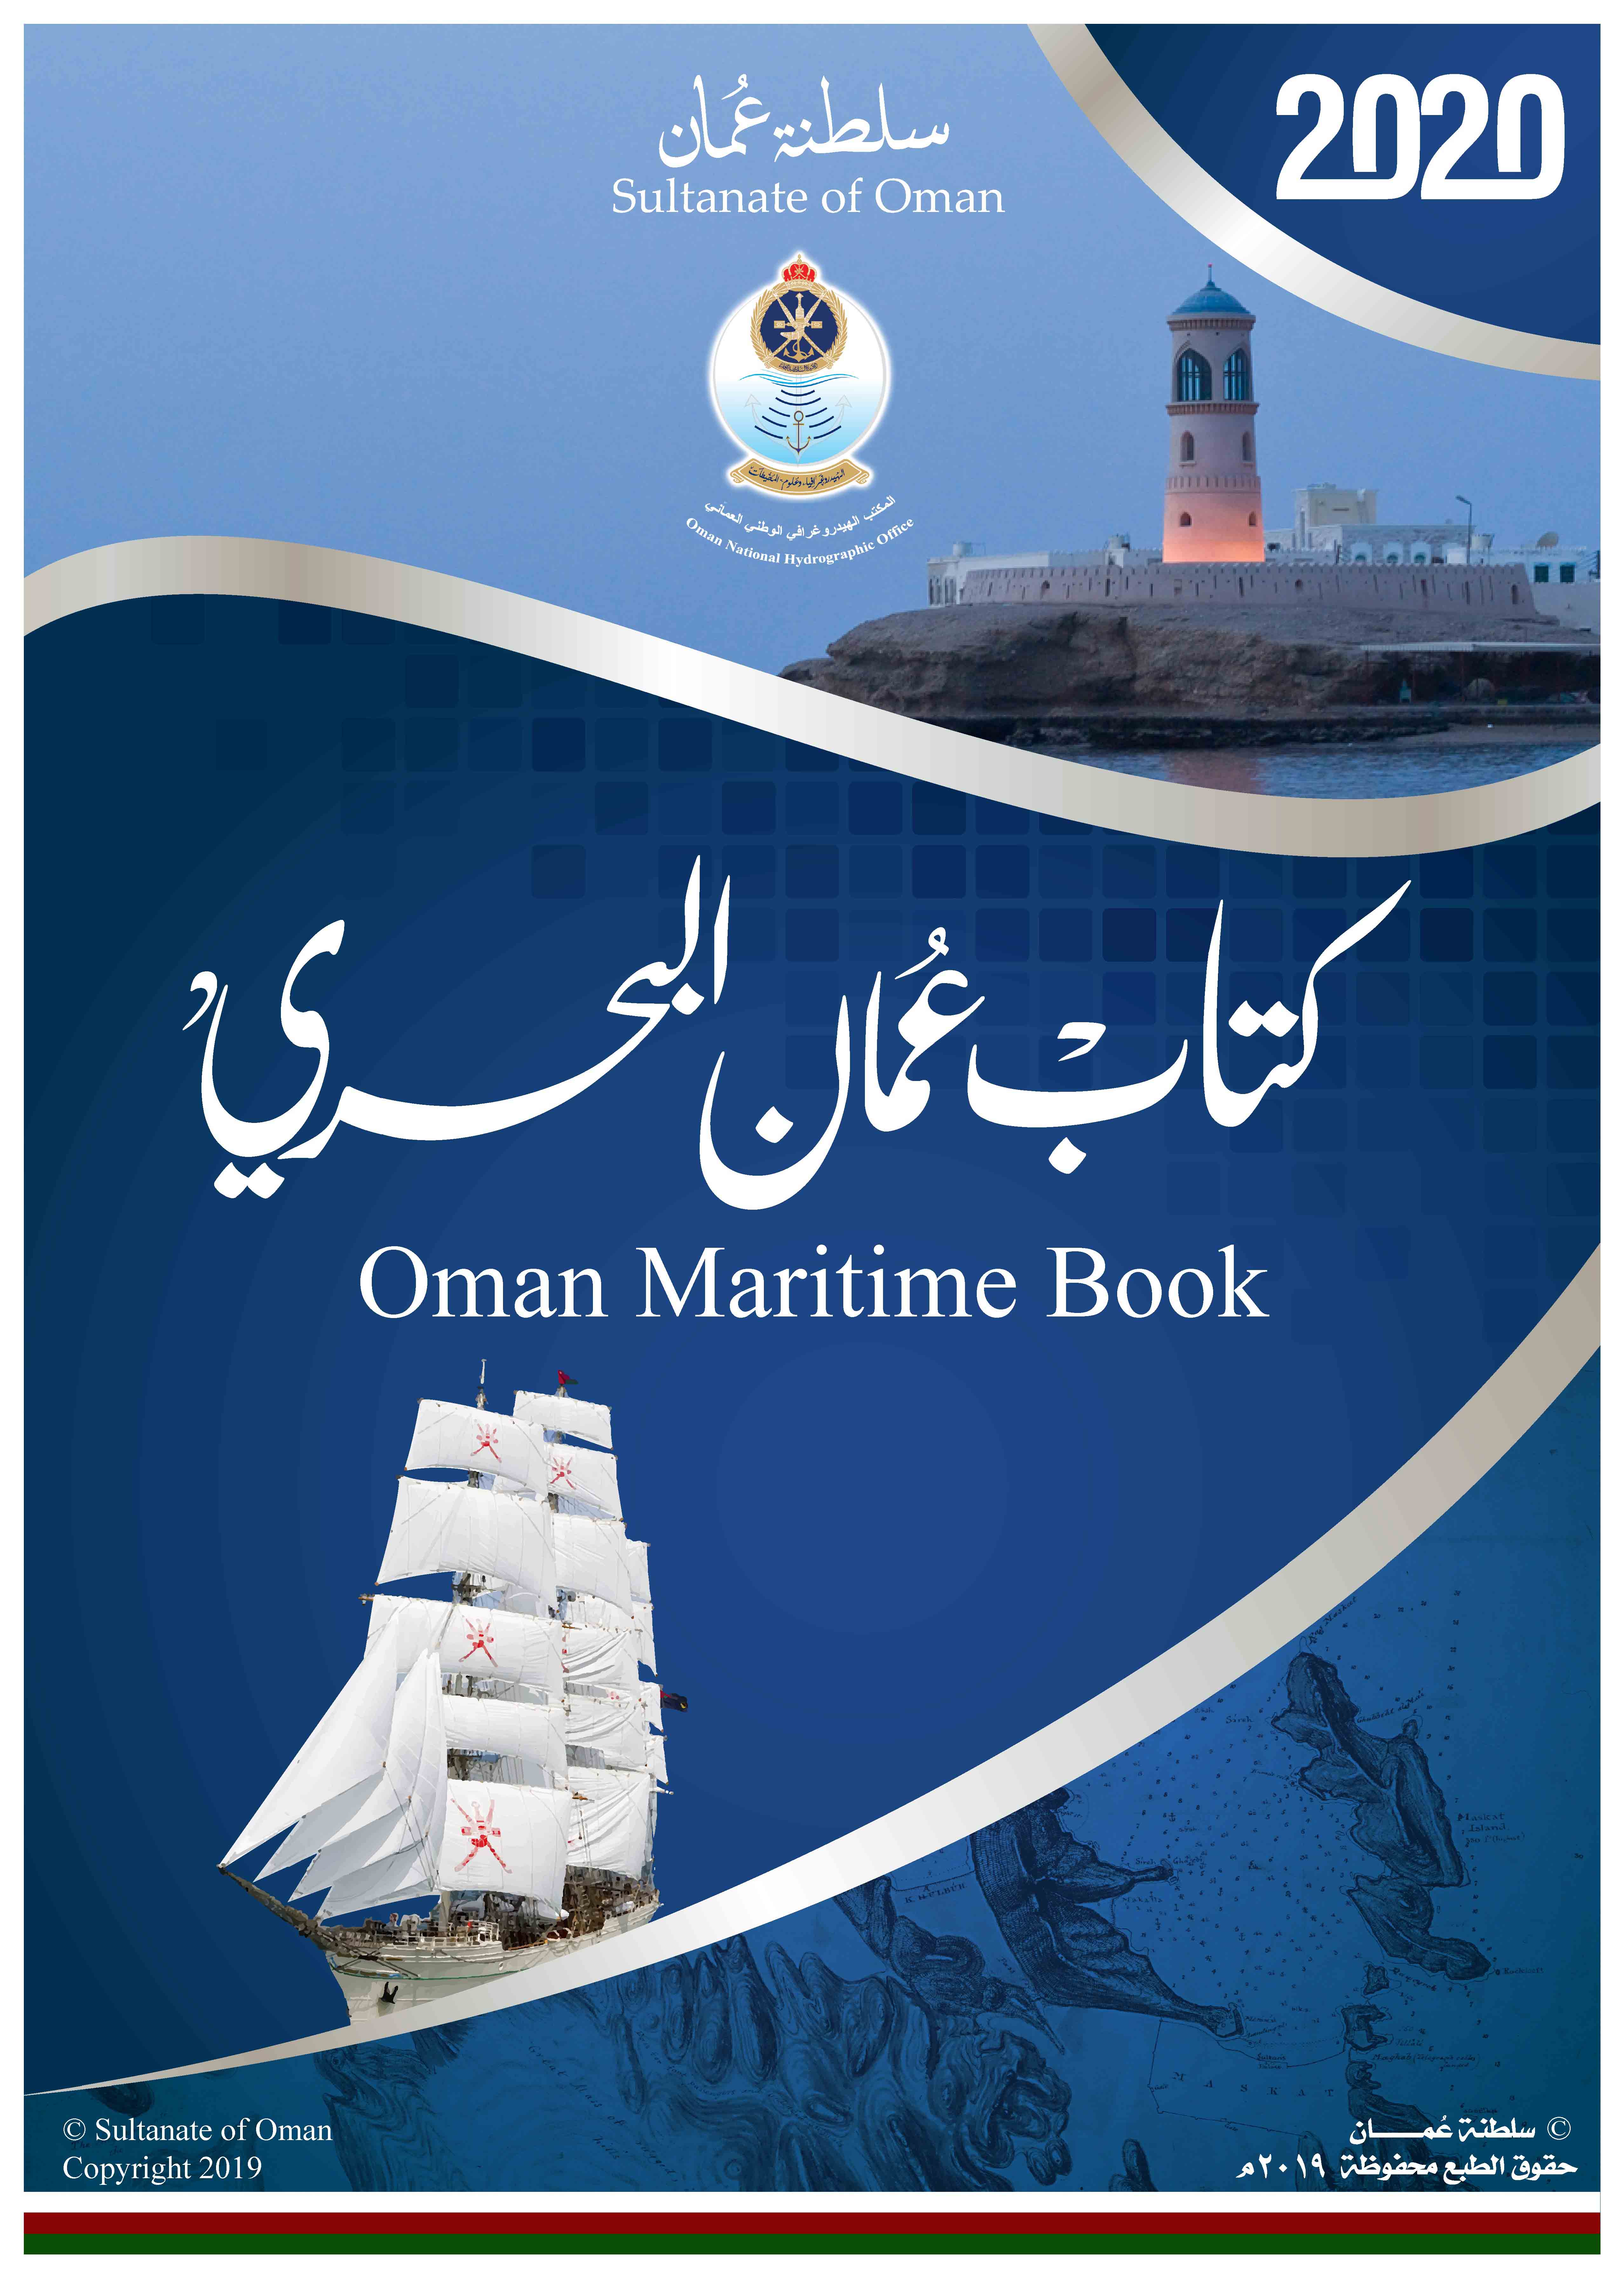 صدور الطبعة الجديدة من كتاب "عمان البحري" السنوي 2020